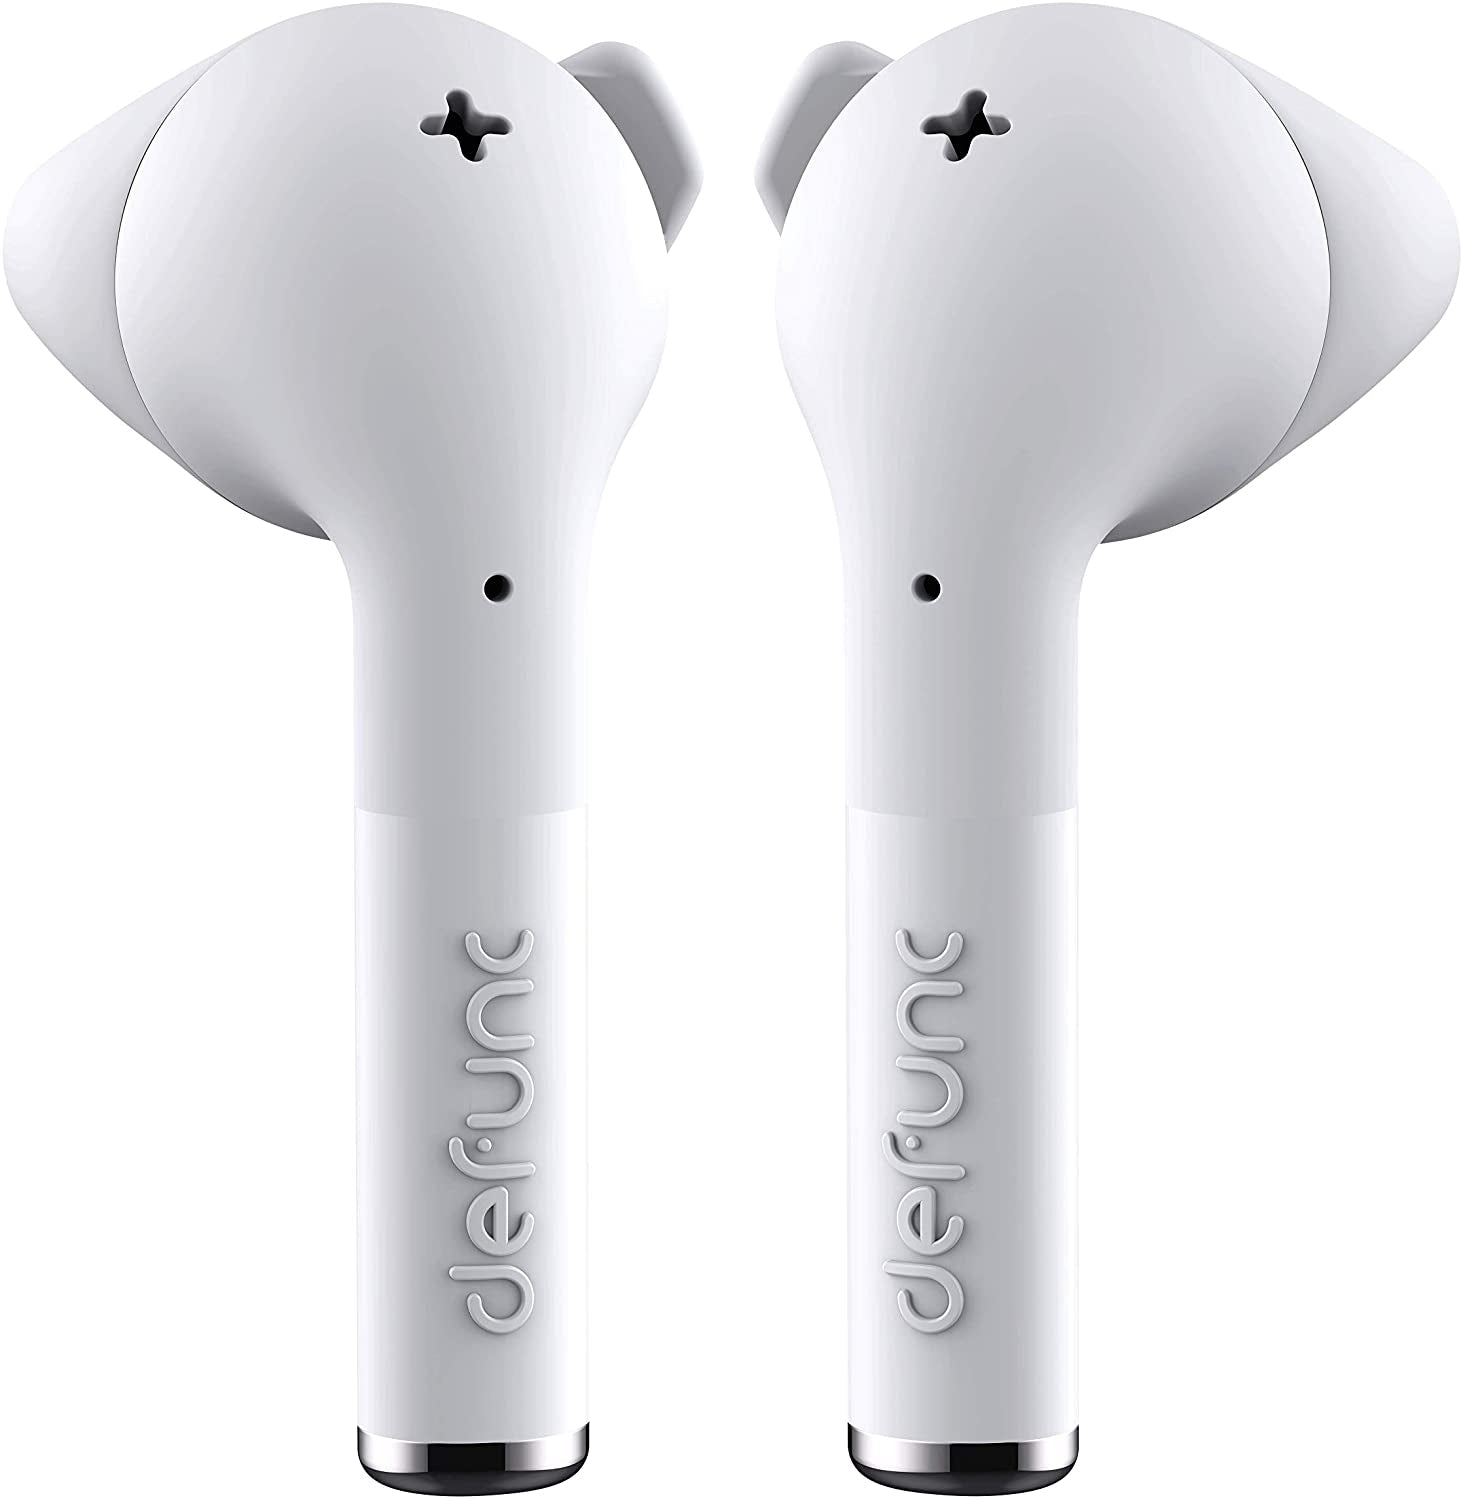 Defunc True Go Wireless Headphones - White